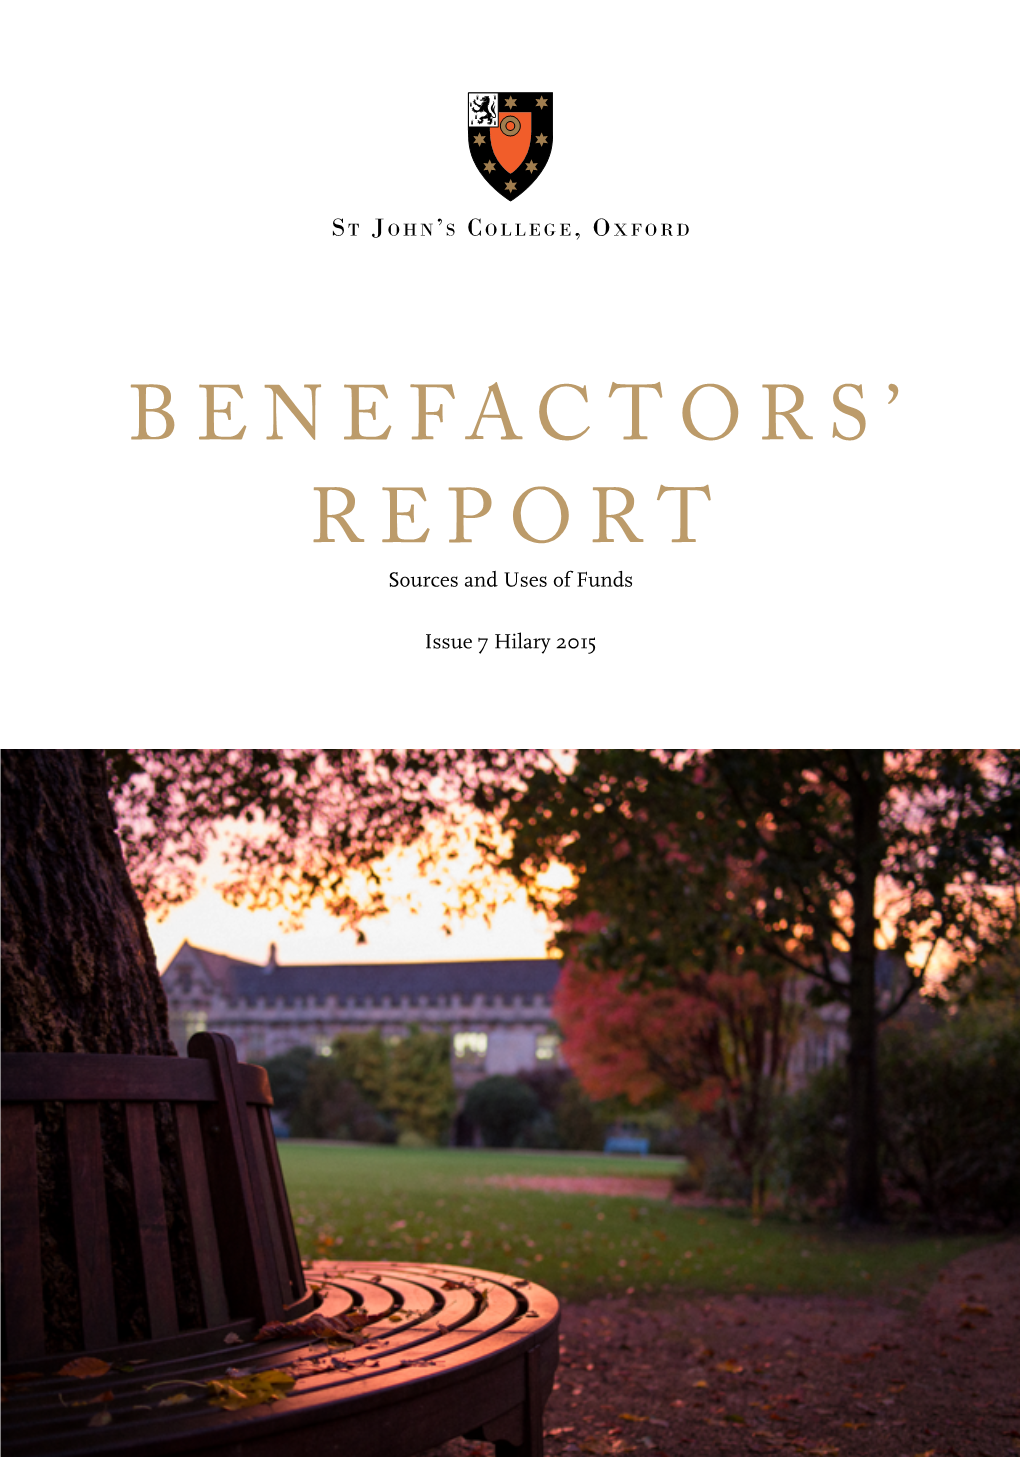 Benefactors' Report 2014/15